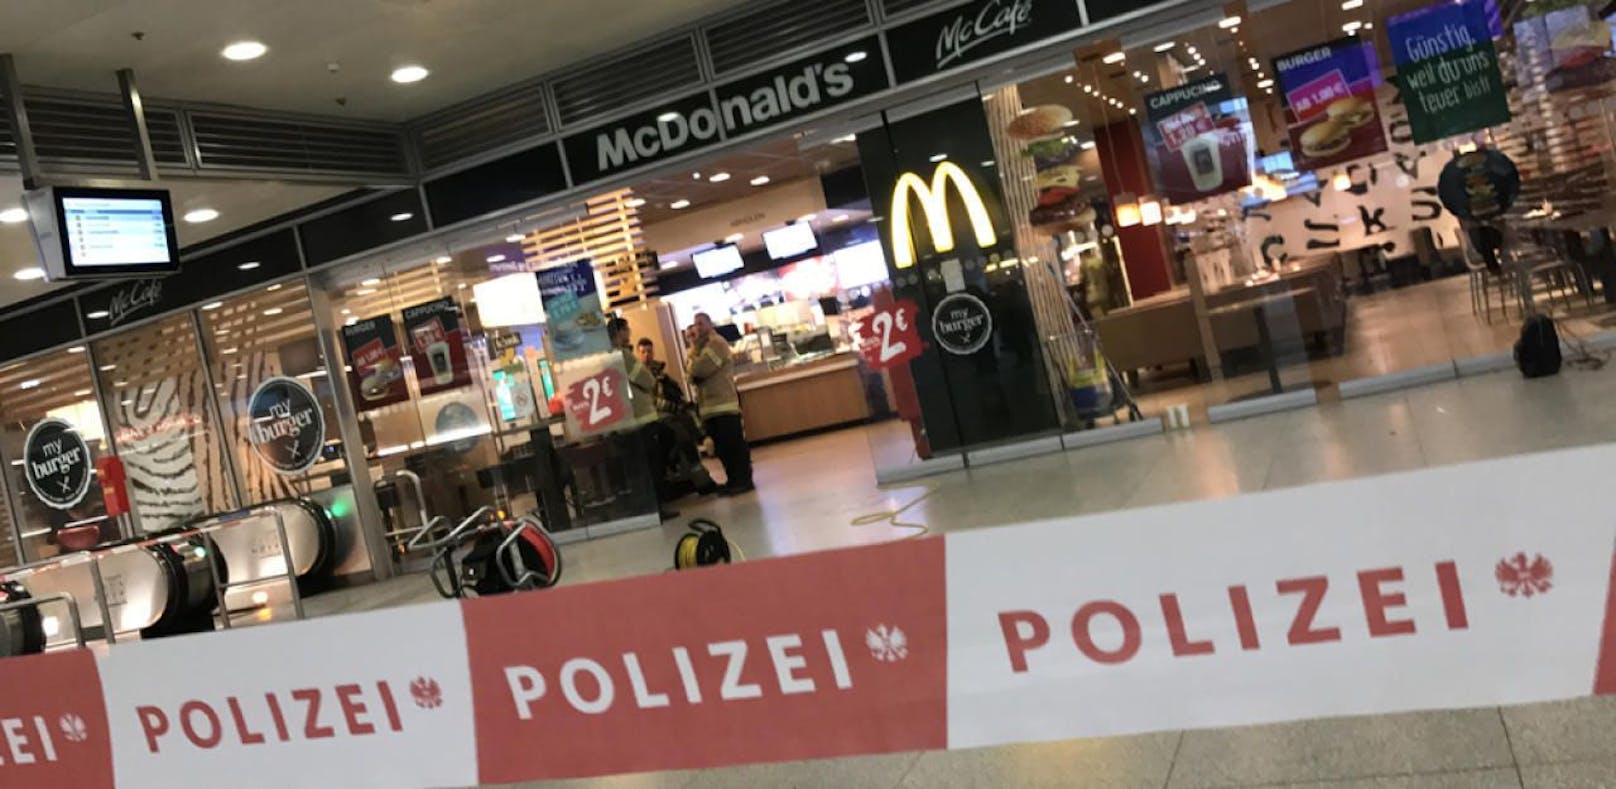 Brennpunkt Linzer Hauptbahnhof: Immer wieder kommt es dort zu Gewalt. Nach einer Pfefferspray-Attacke musste sogar schon der McDonald's geräumt werden.